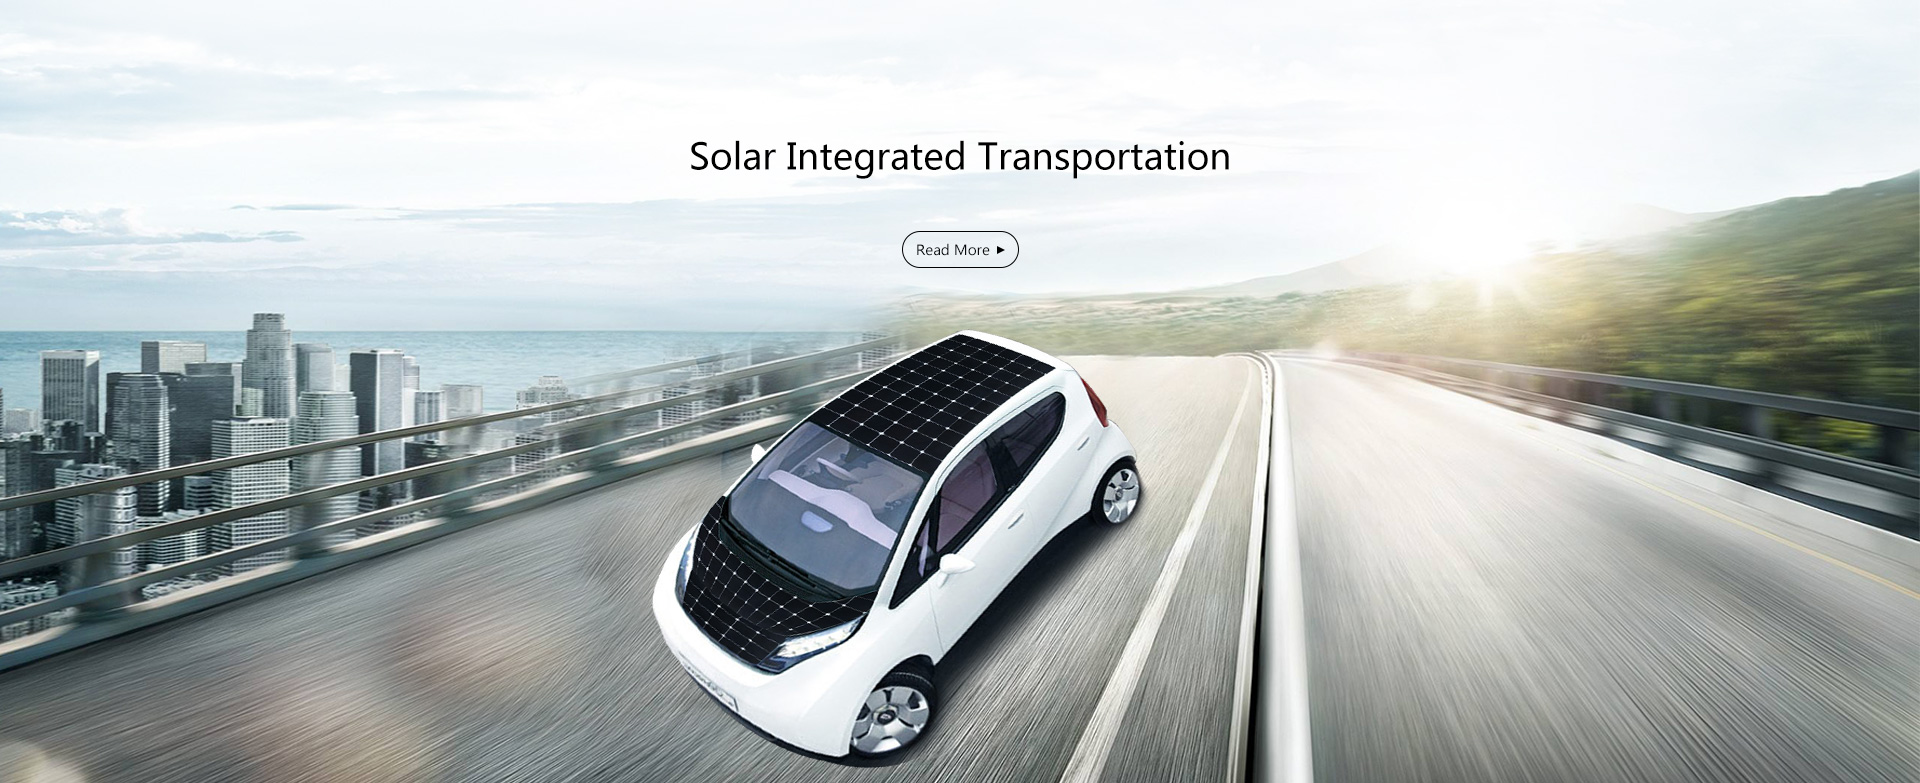  Solar Integrated Transportation